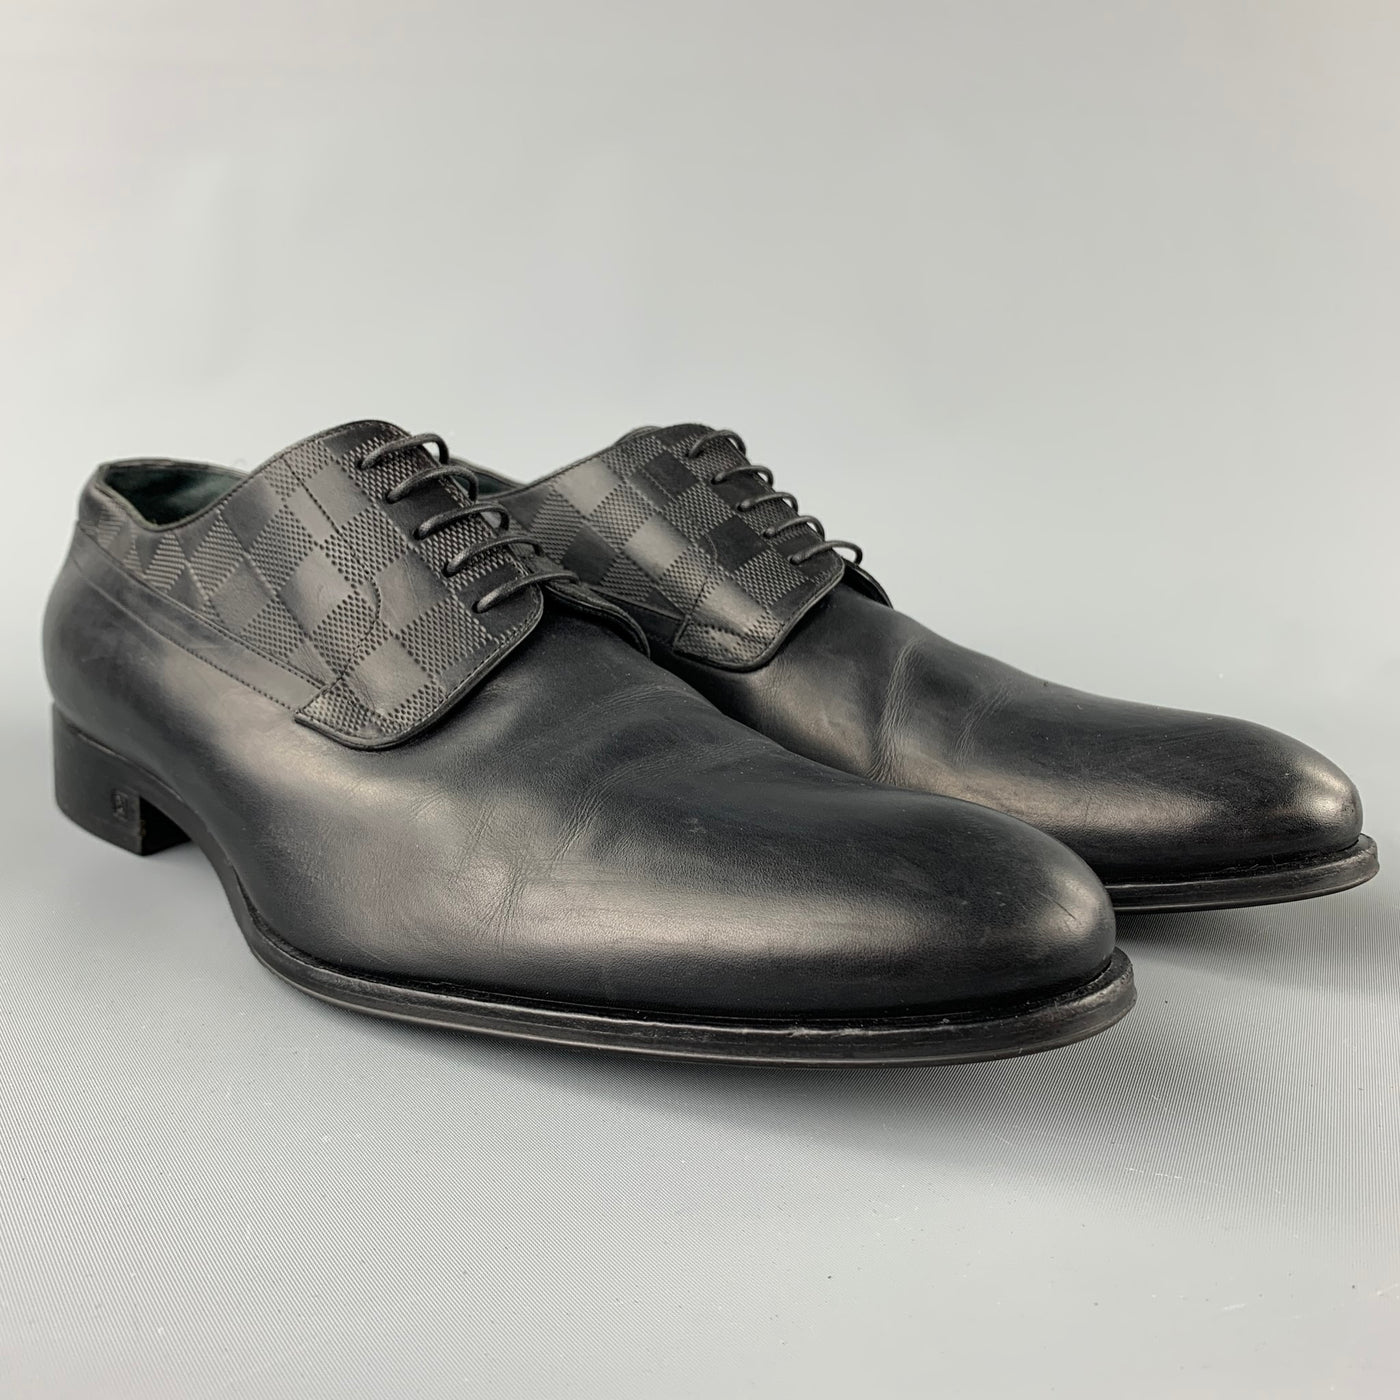 NEW Louis Vuitton Men Formal Derby Black Leather Dress Shoes Size